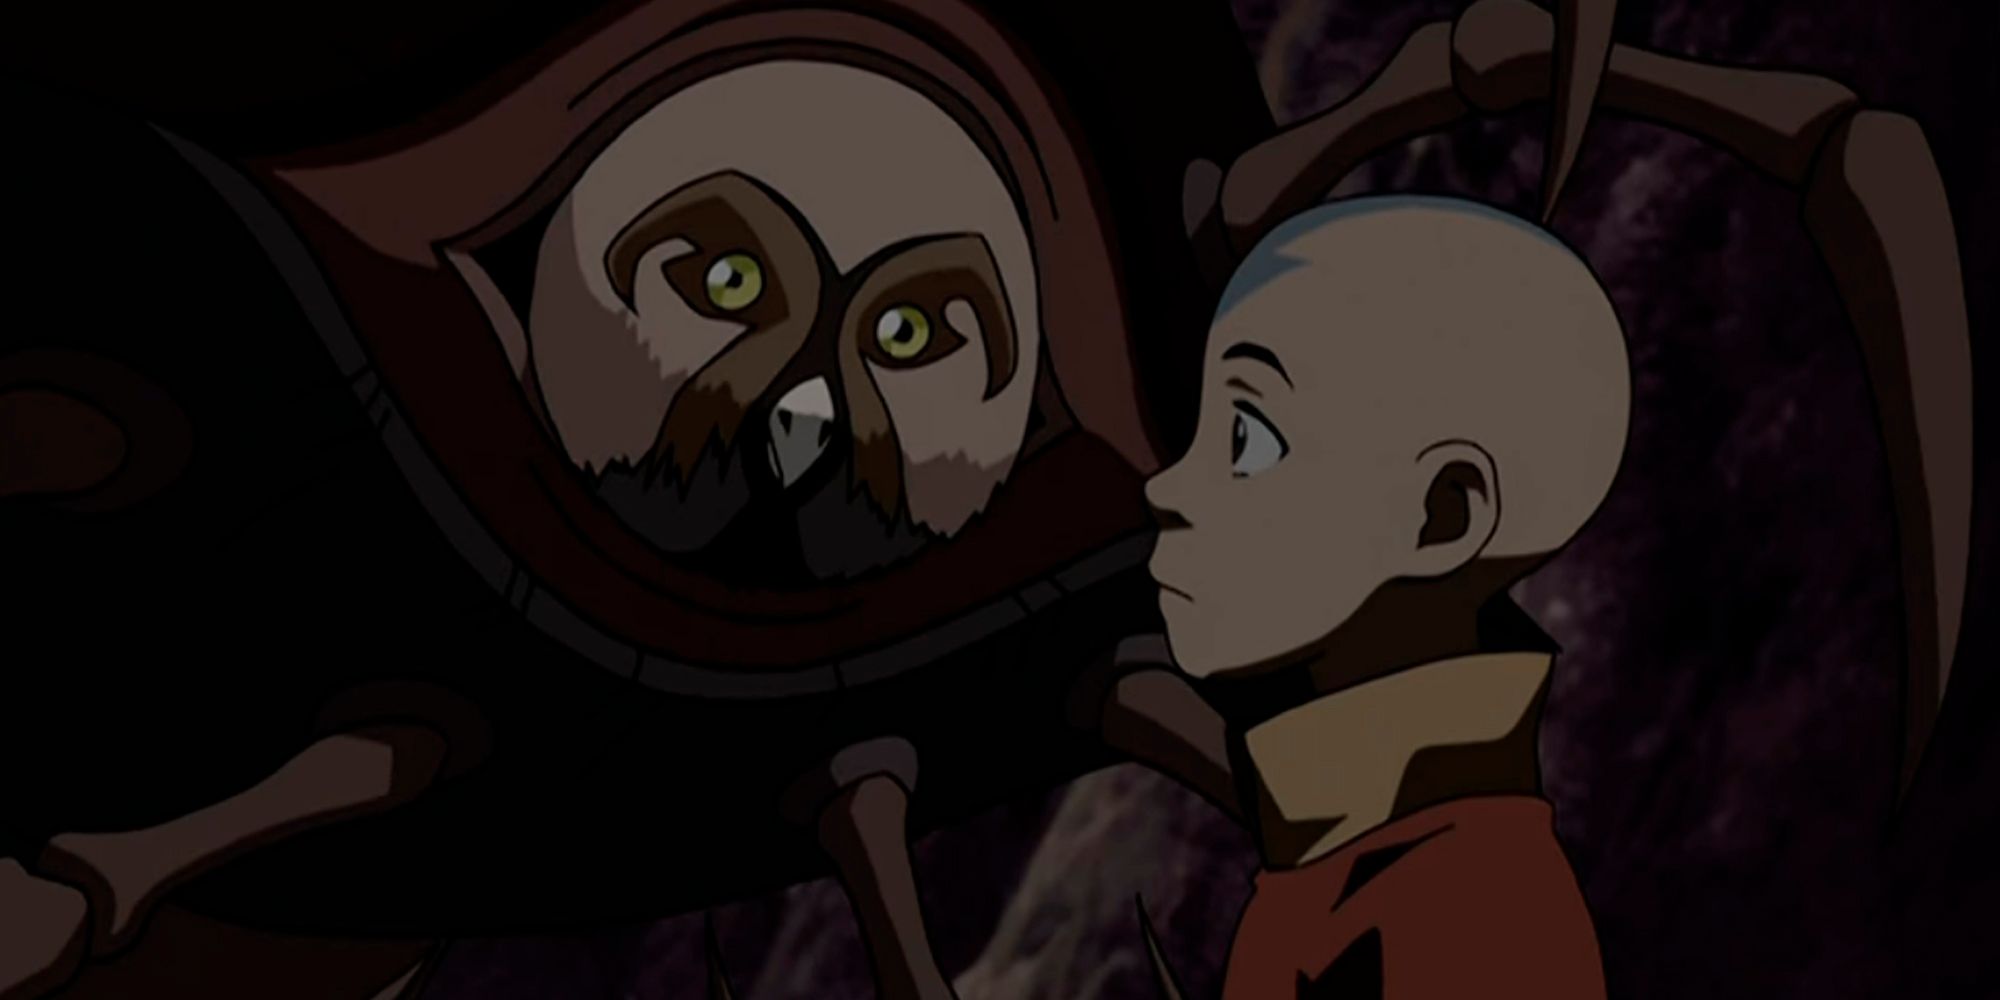 Koh, o Ladrão de Rostos, usando uma cara de coruja enquanto conversa com Aang em Avatar The Last Airbender